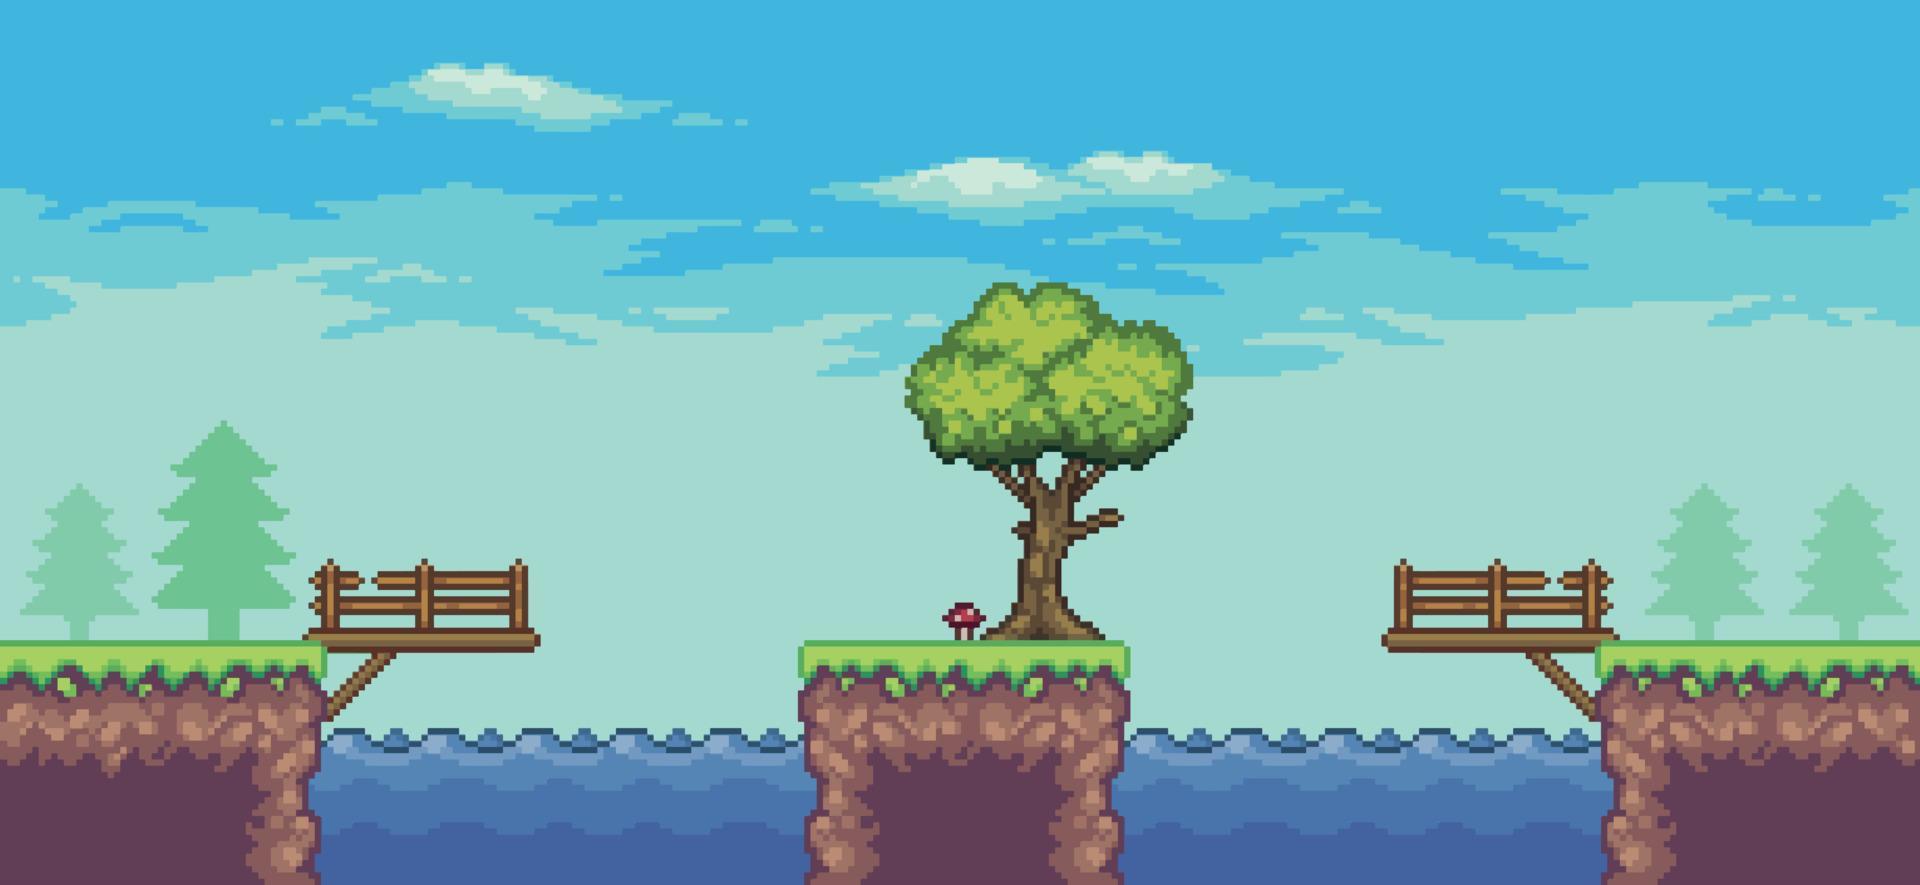 scène de jeu d'arcade pixel art avec arbre, lac, pont, clôture et nuages fond vectoriel 8 bits